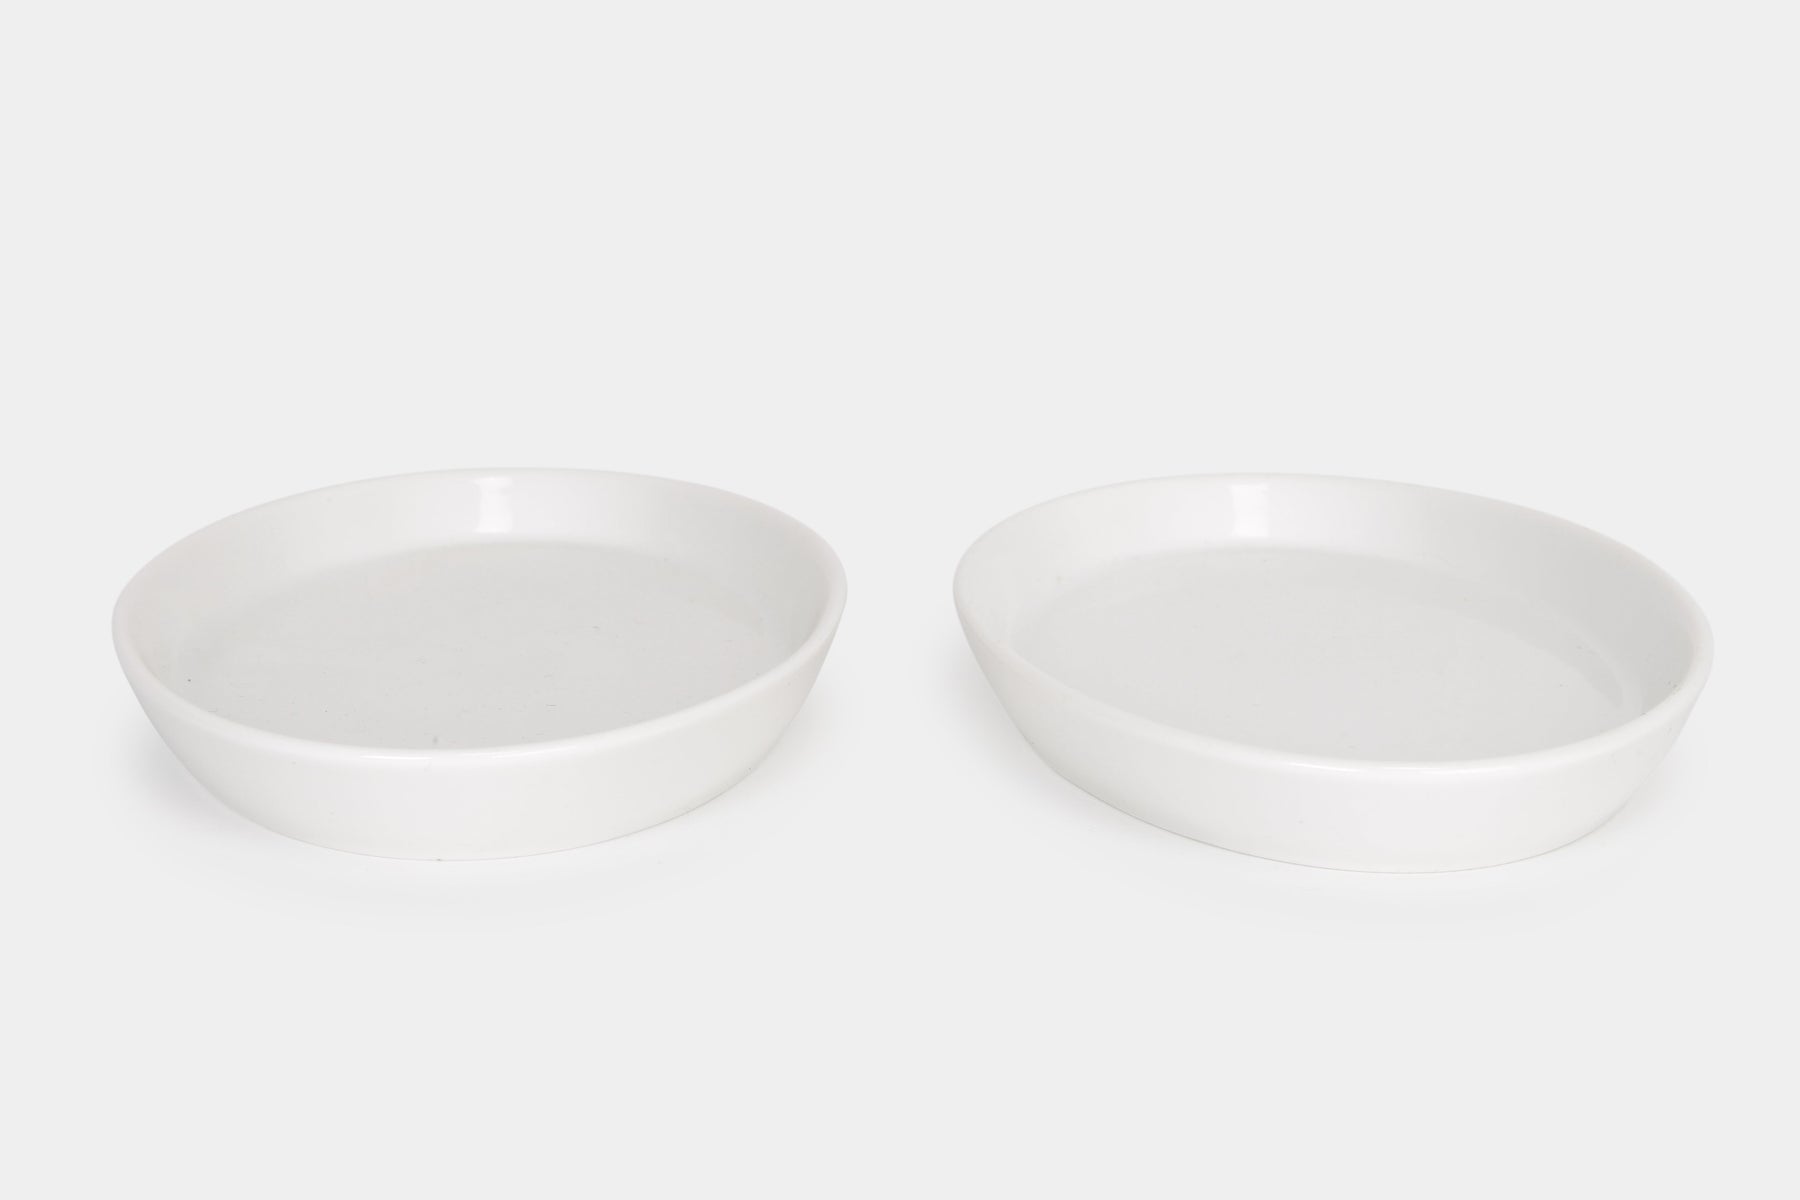 Pair of Porcelaine Bowls, Royal Copenhagen, 60s